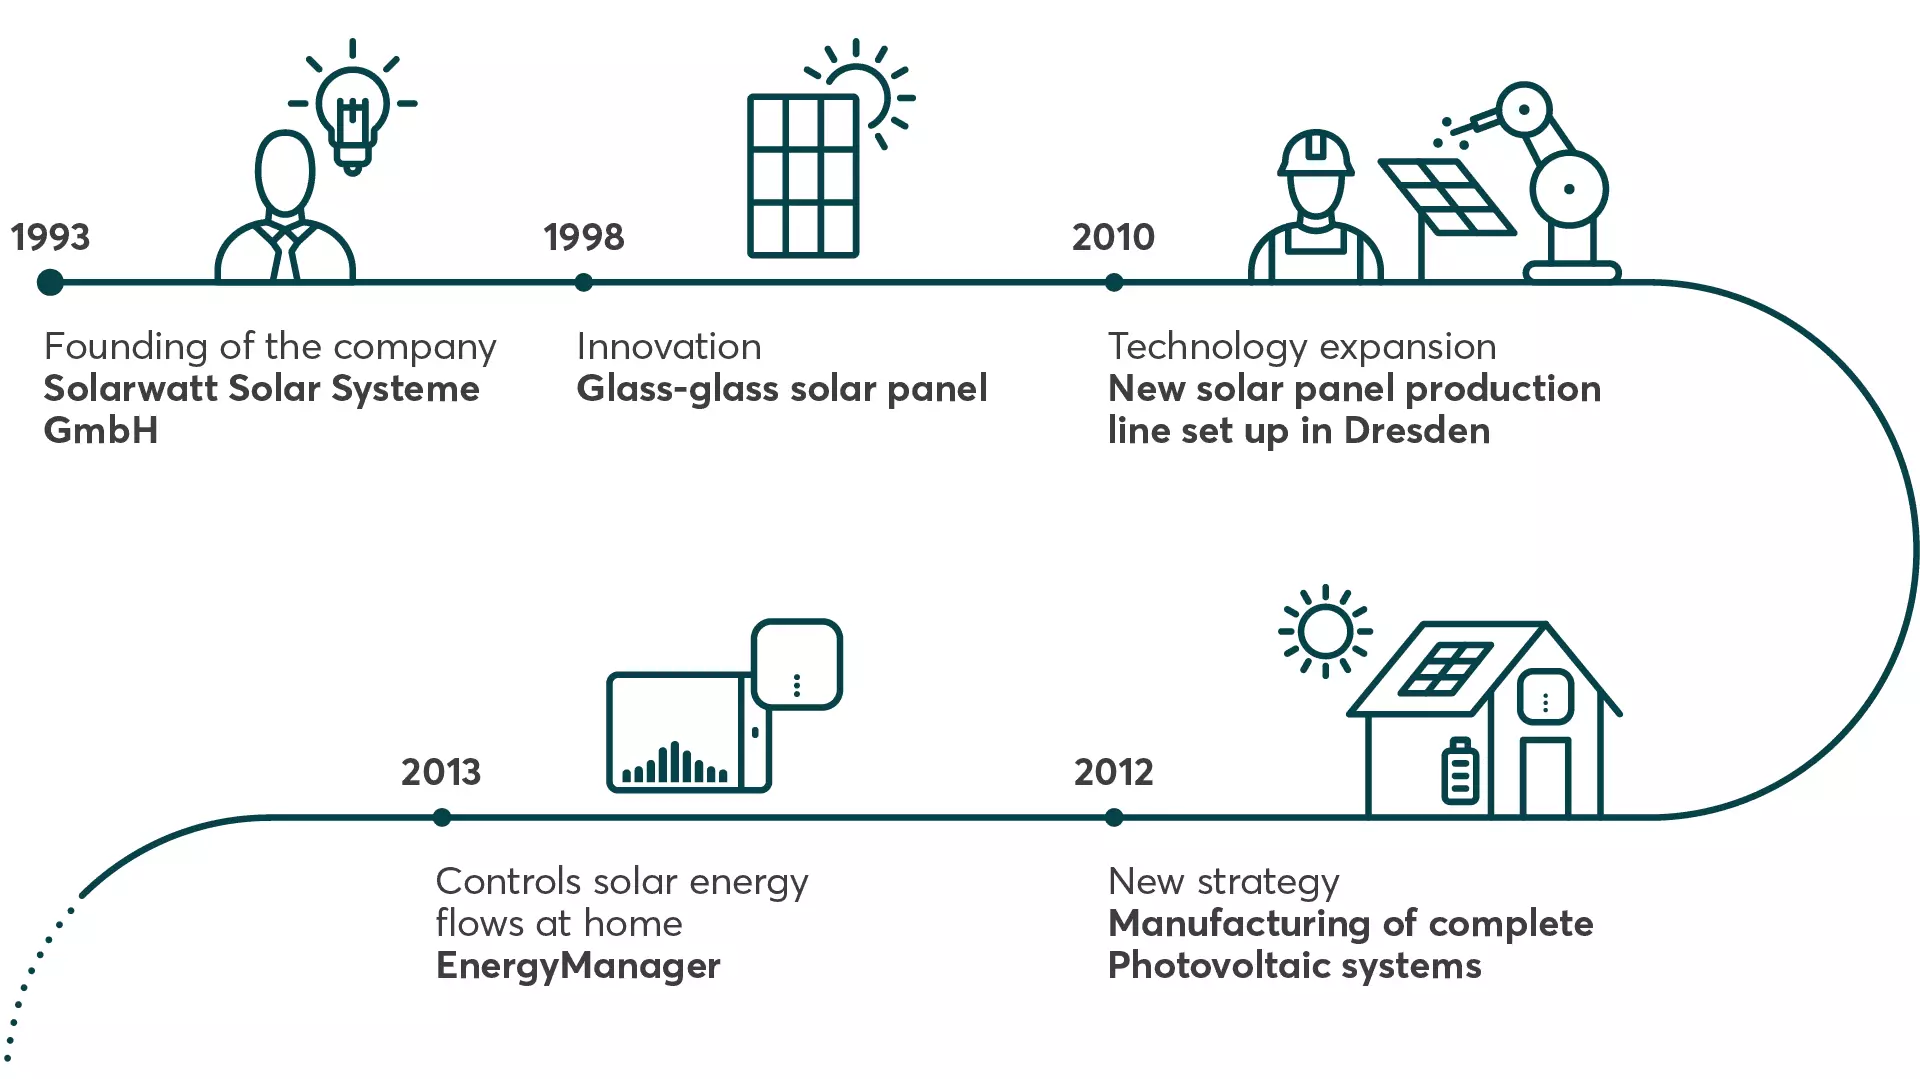 Solarwatt history 1993 - 2013